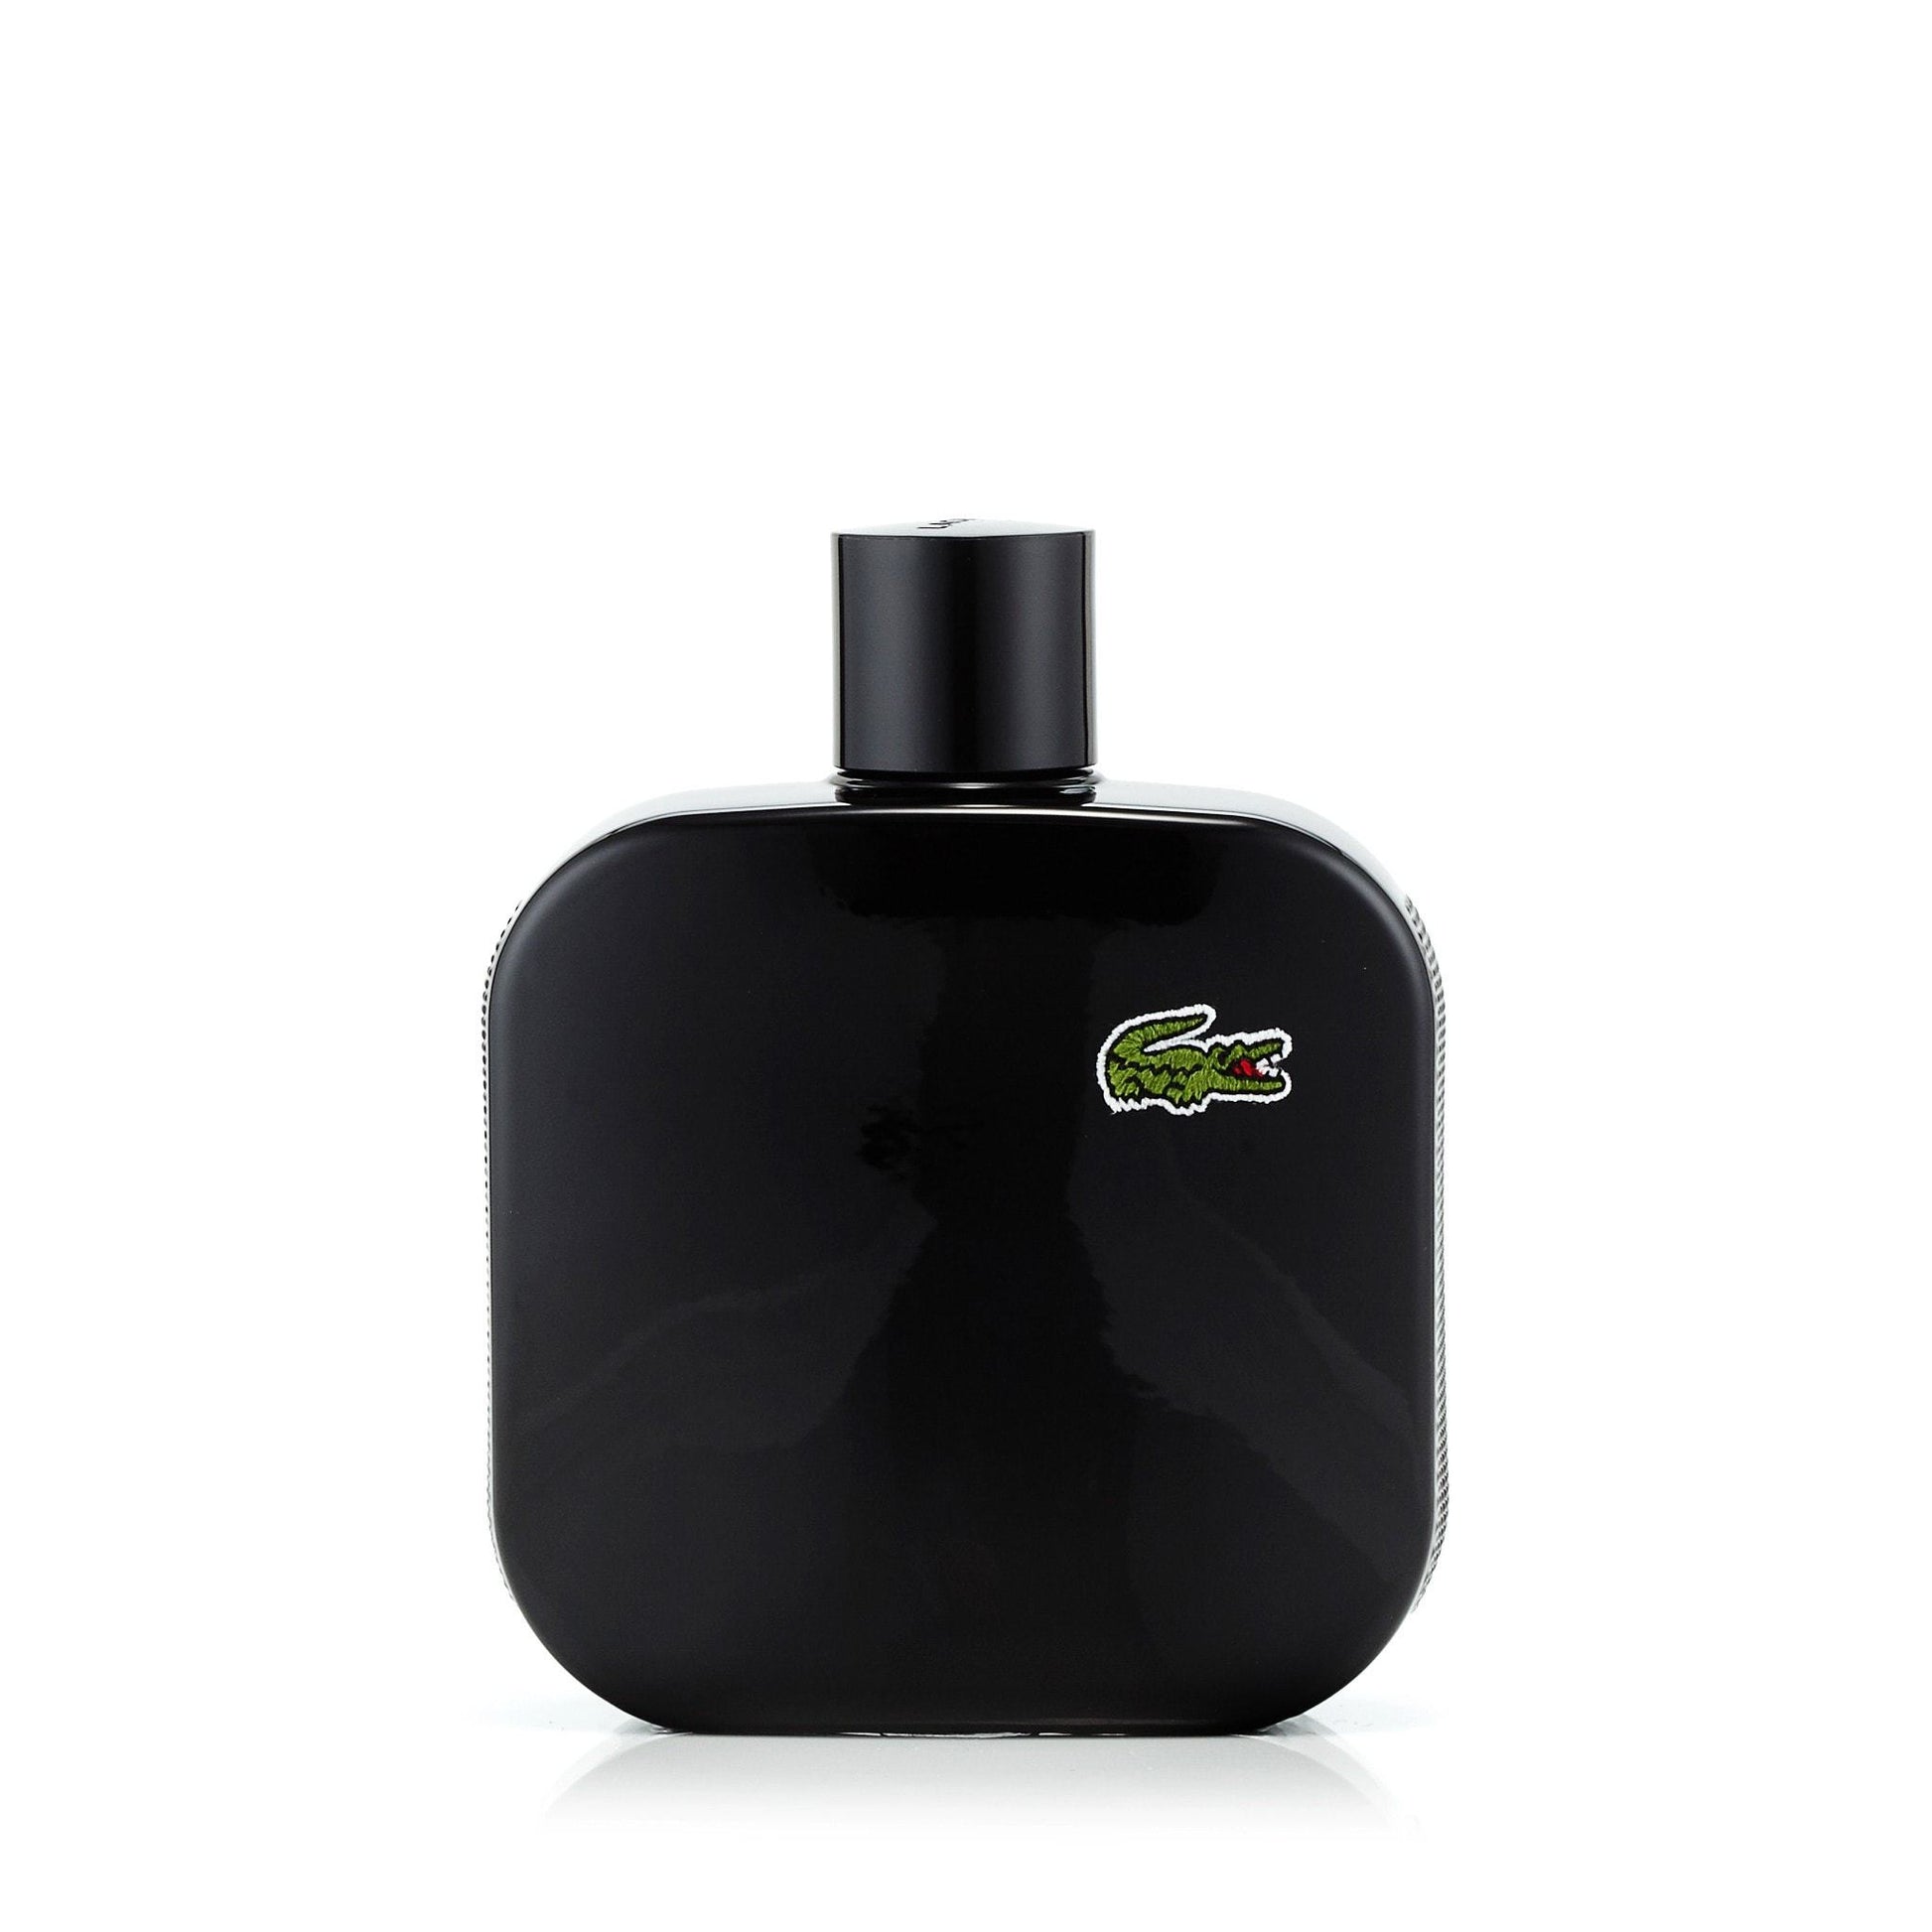 L.12.12 Noir Eau de Toilette Spray for Men by Lacoste, Product image 1